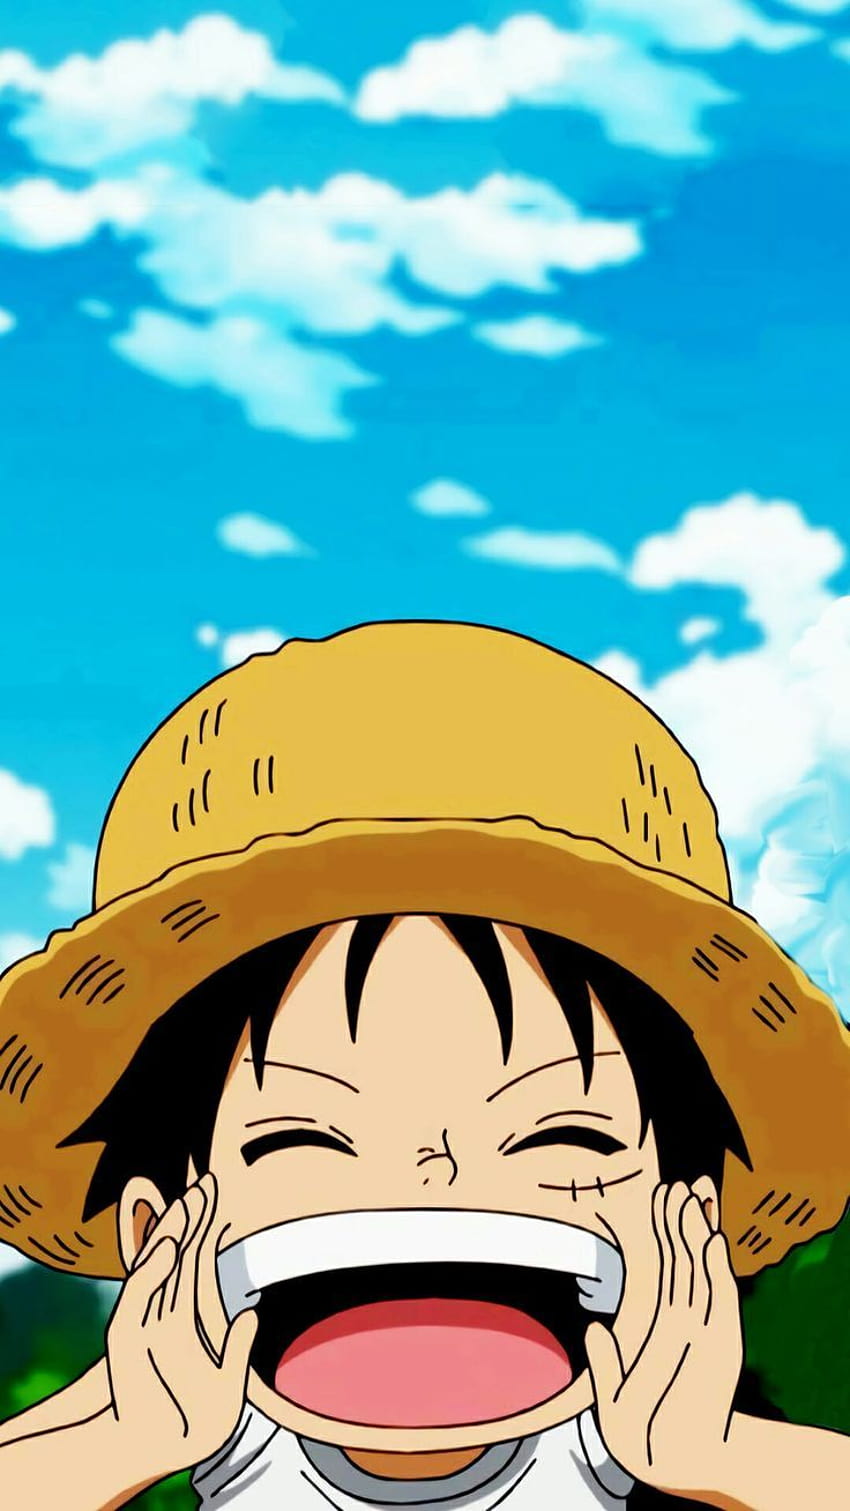 Luffy: Luffy, nhân vật chính của series One Piece, đã trở thành biểu tượng của nhiều người yêu mến Manga/Anime. Hãy xem những hình ảnh liên quan và khám phá thế giới của Luffy, cũng như các đồng đội trong nhóm Mũ Rơm, trong những trận chiến đầy kịch tính.